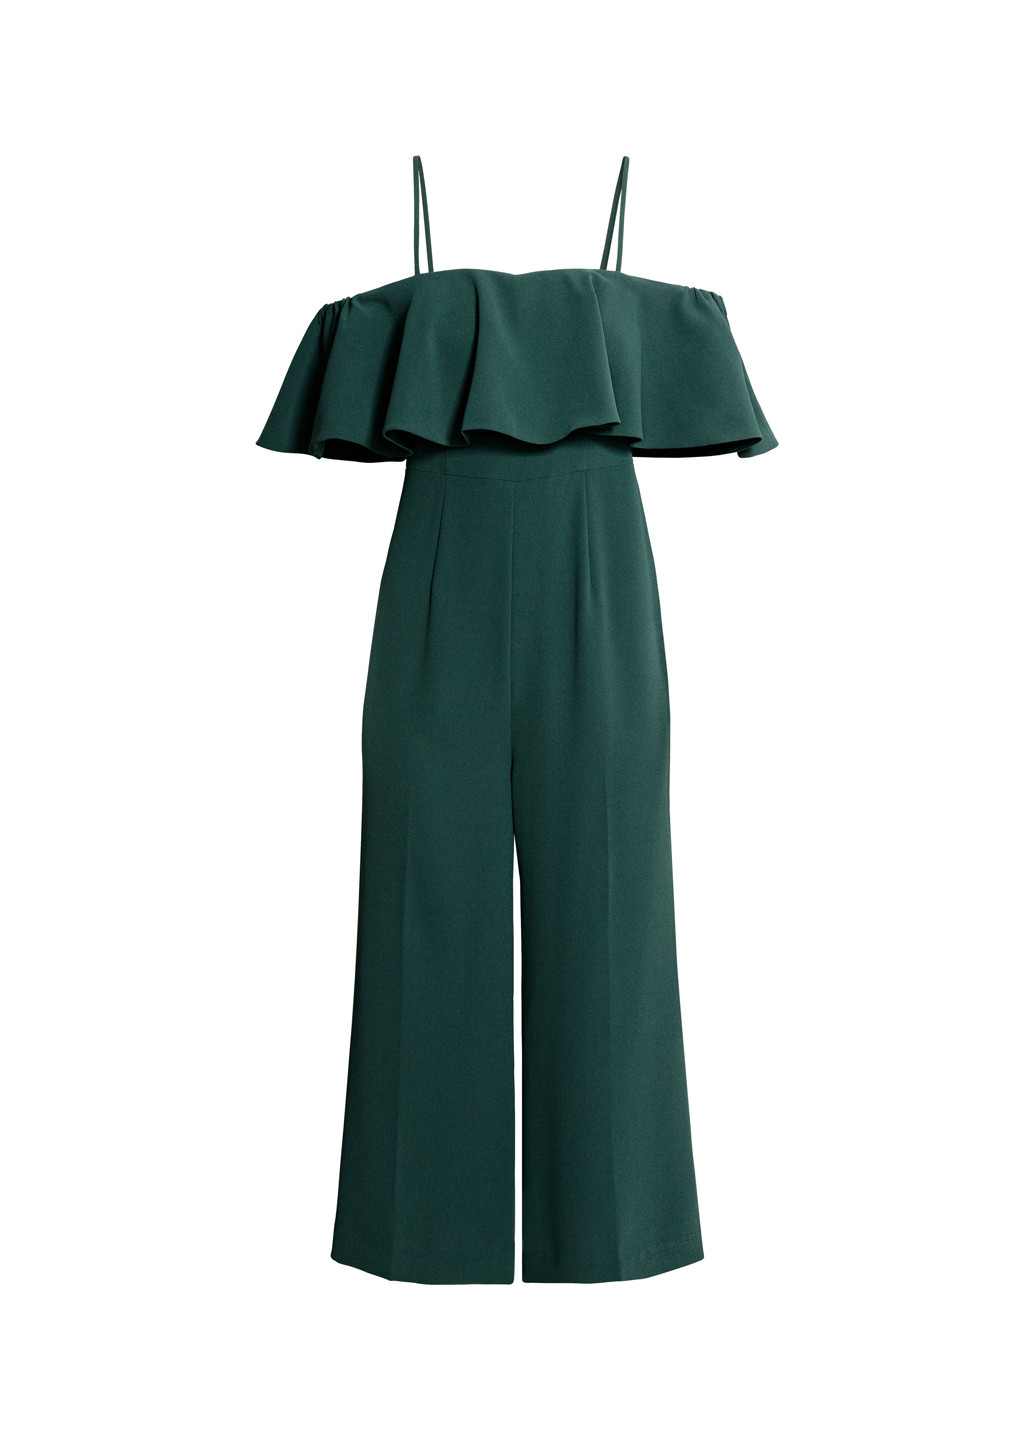 Комбинезон H&M комбинезон-брюки темно-зелёный кэжуал полиэстер